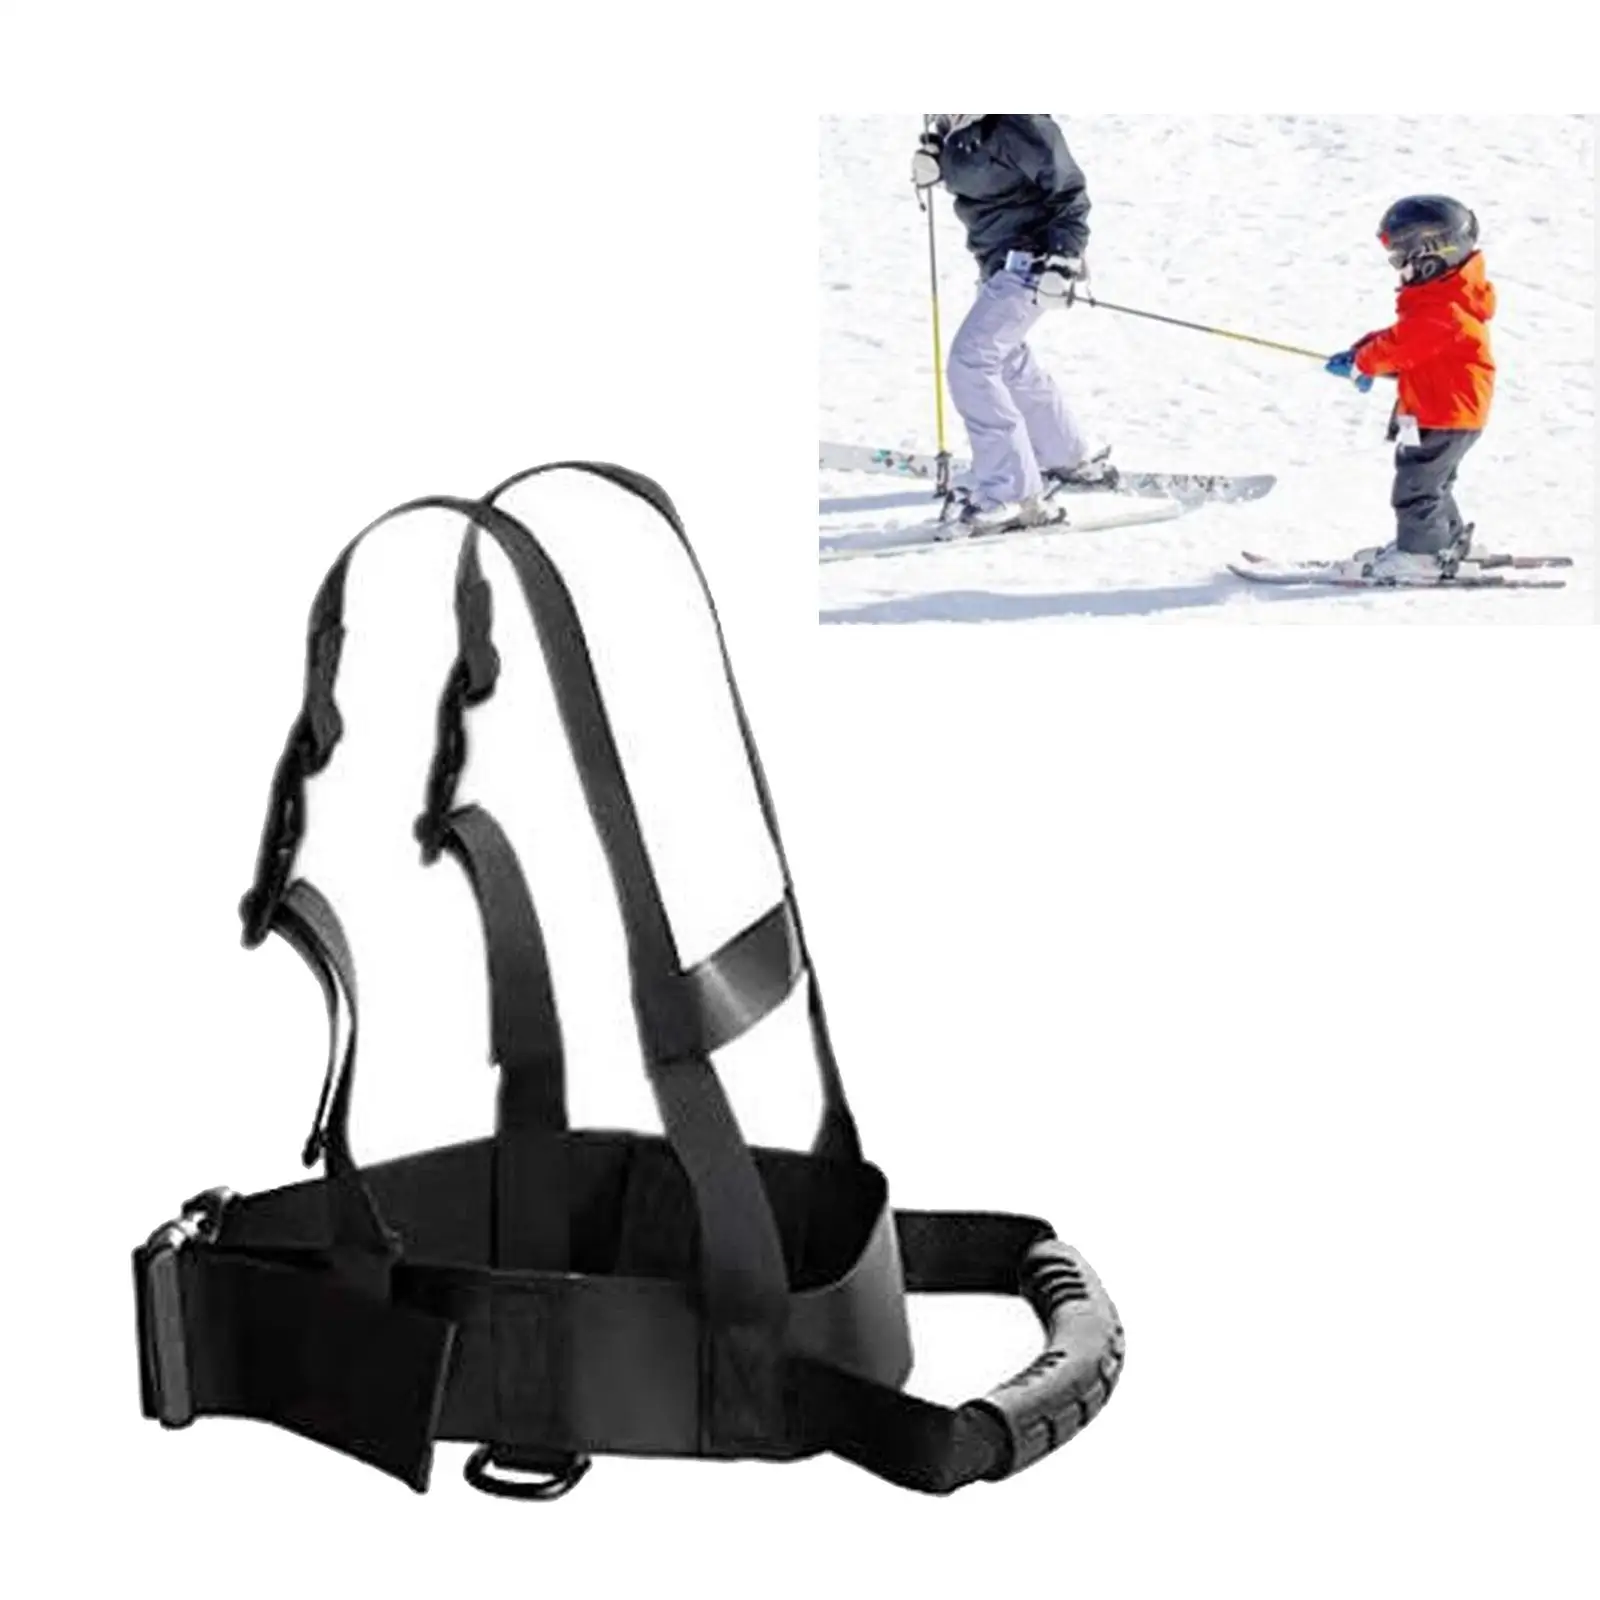 Kids Ski Shoulder Harness Leash, Skating, Snowboard, Roller Skating Training,